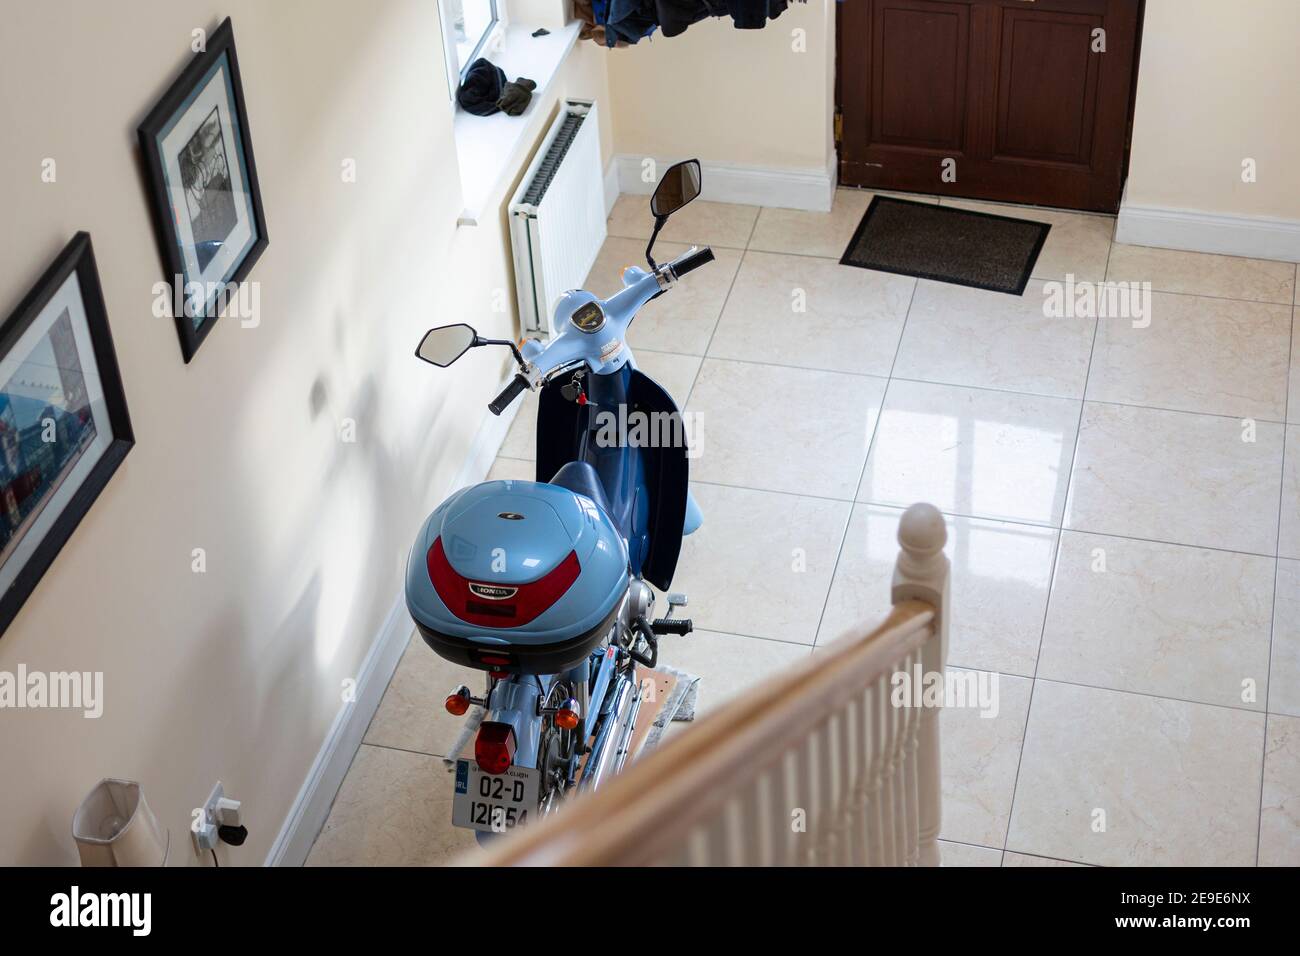 Garder la moto à l'intérieur de la maison Banque D'Images